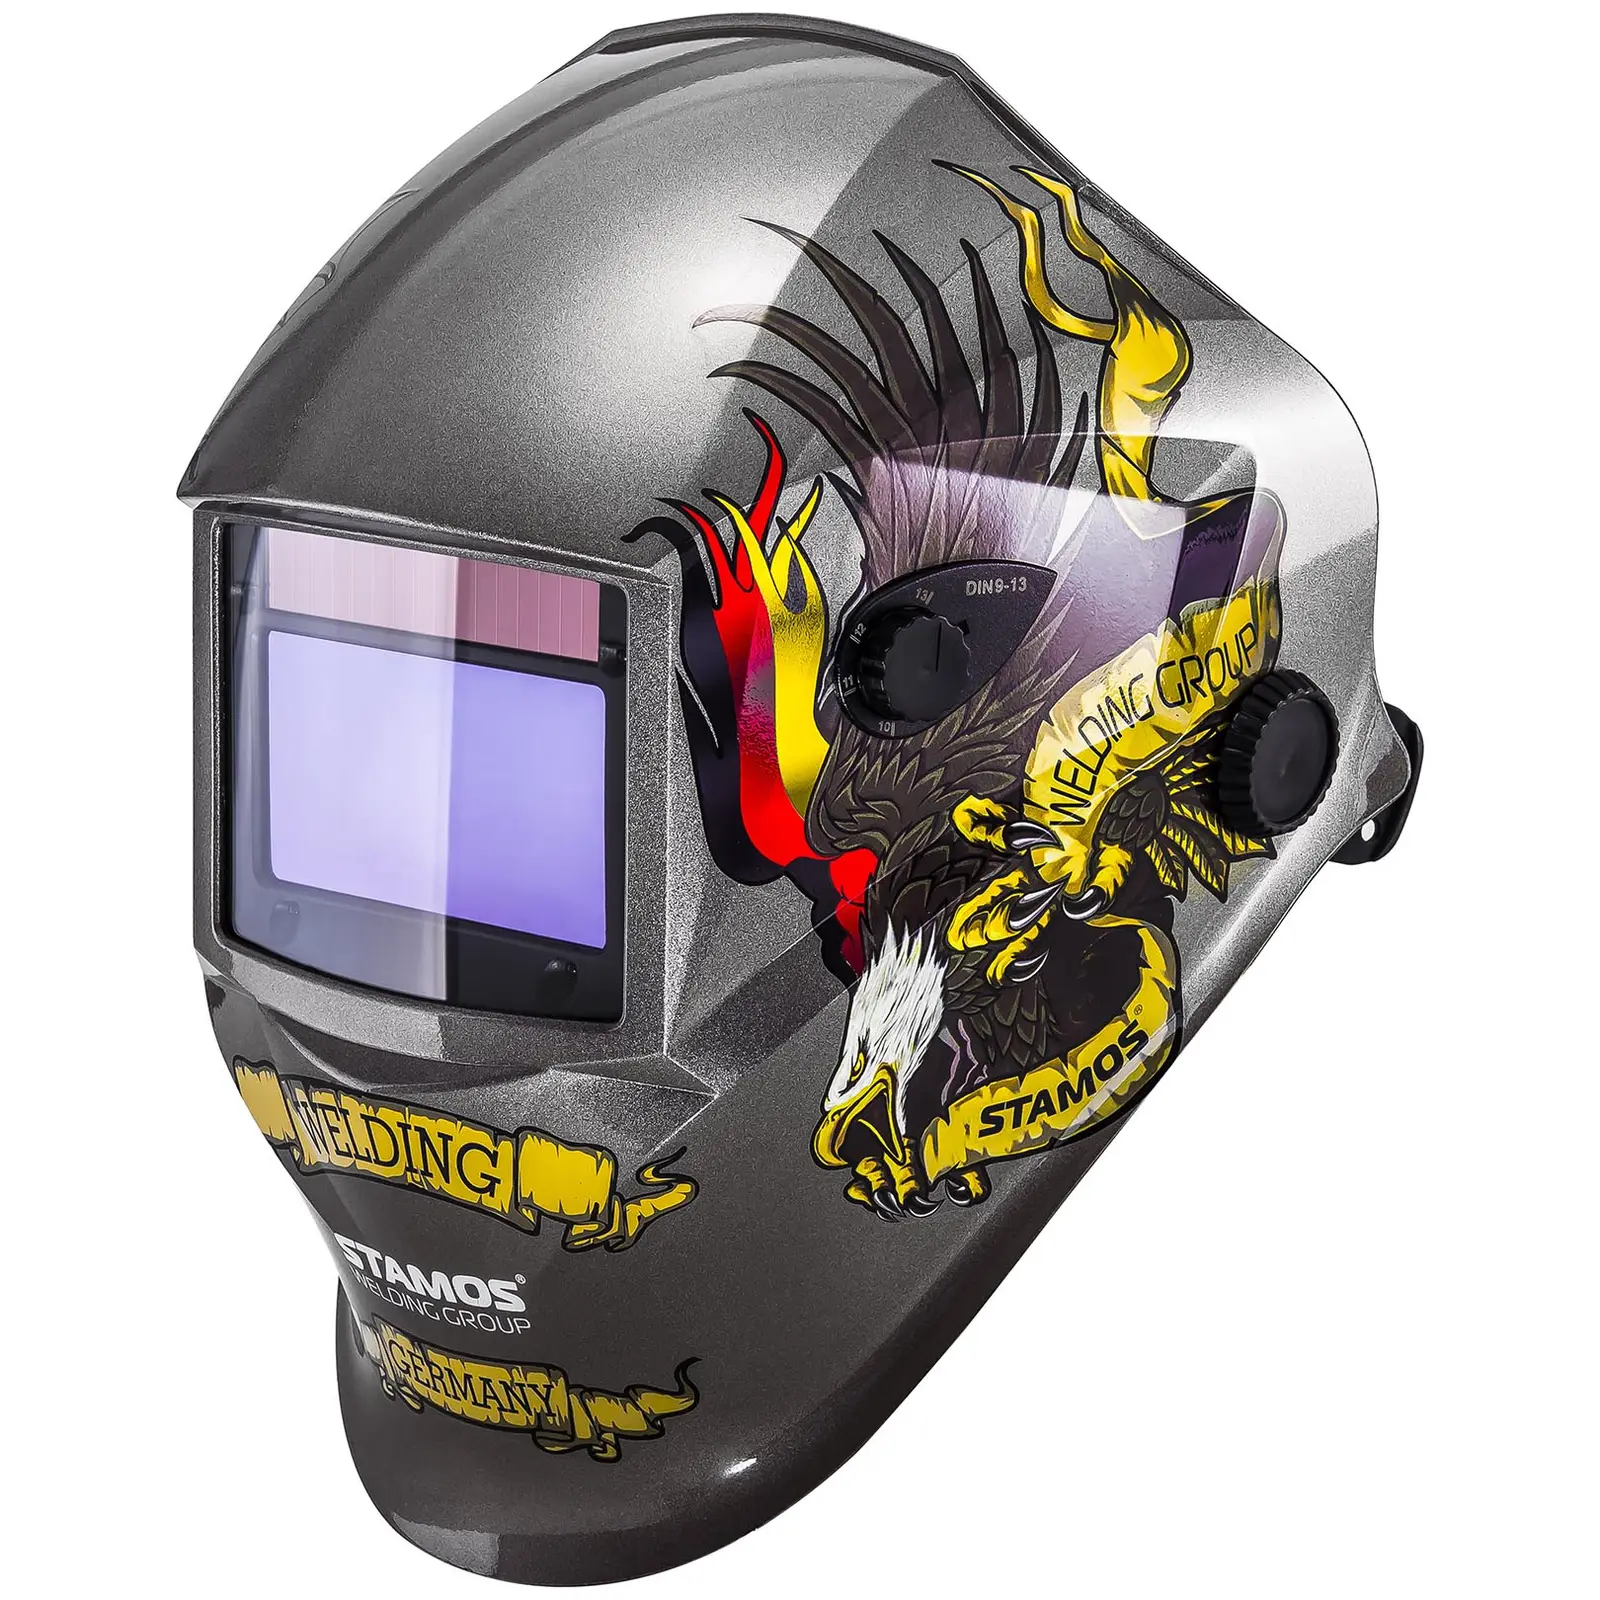 Svářecí helma- Eagle Eye advanced series - Svářecí helmy Stamos Germany